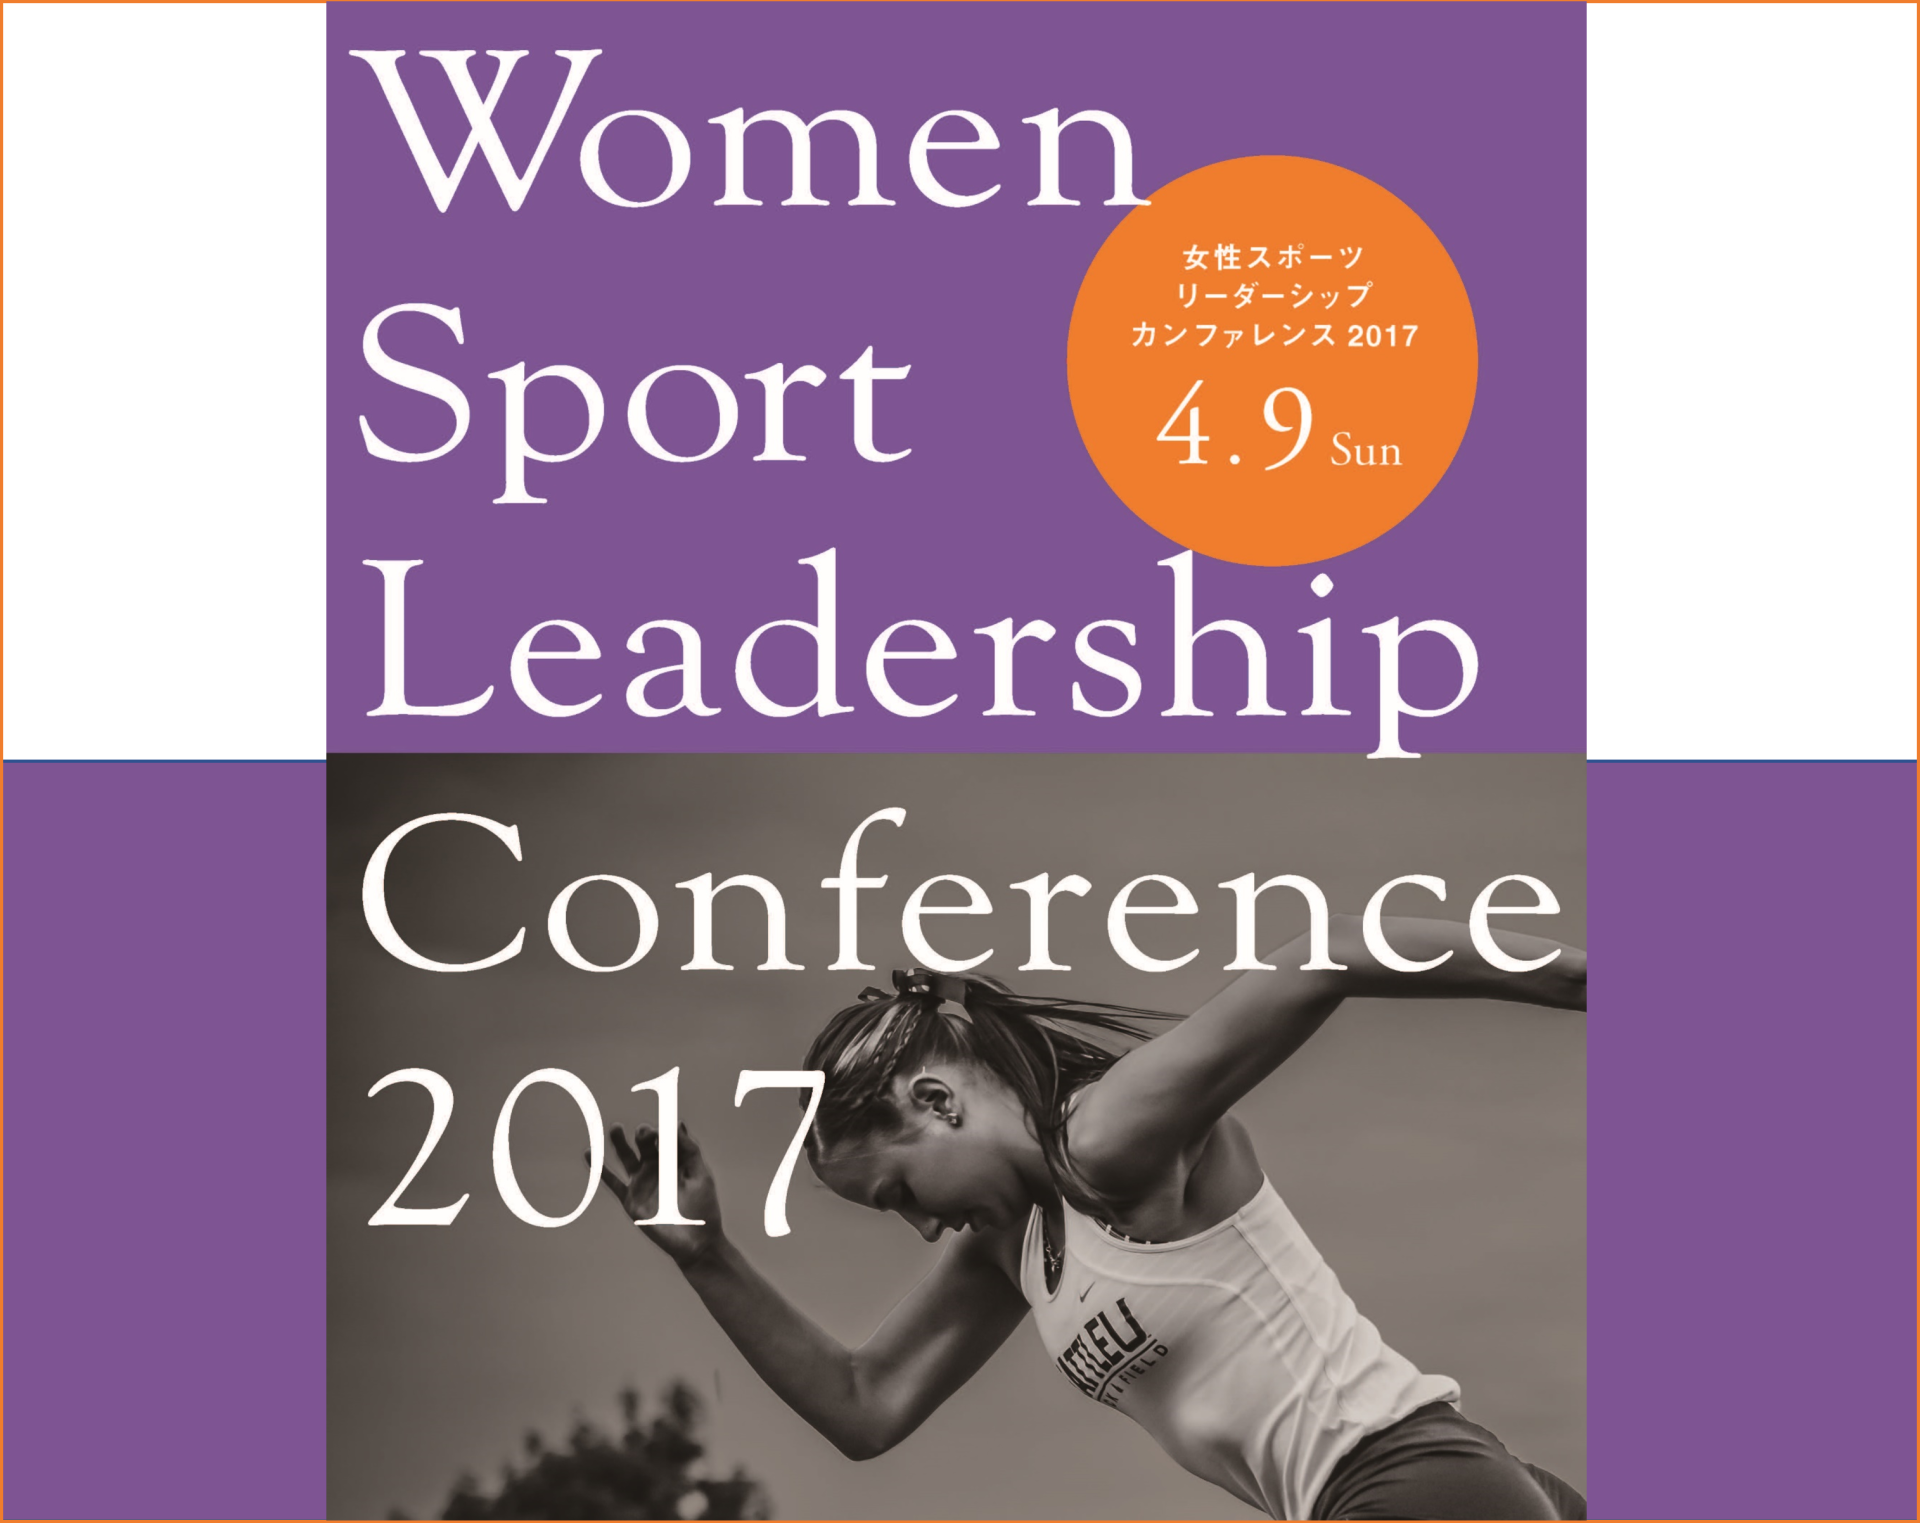 「女性スポーツリーダーシップカンファレンス2017」開催のご案内